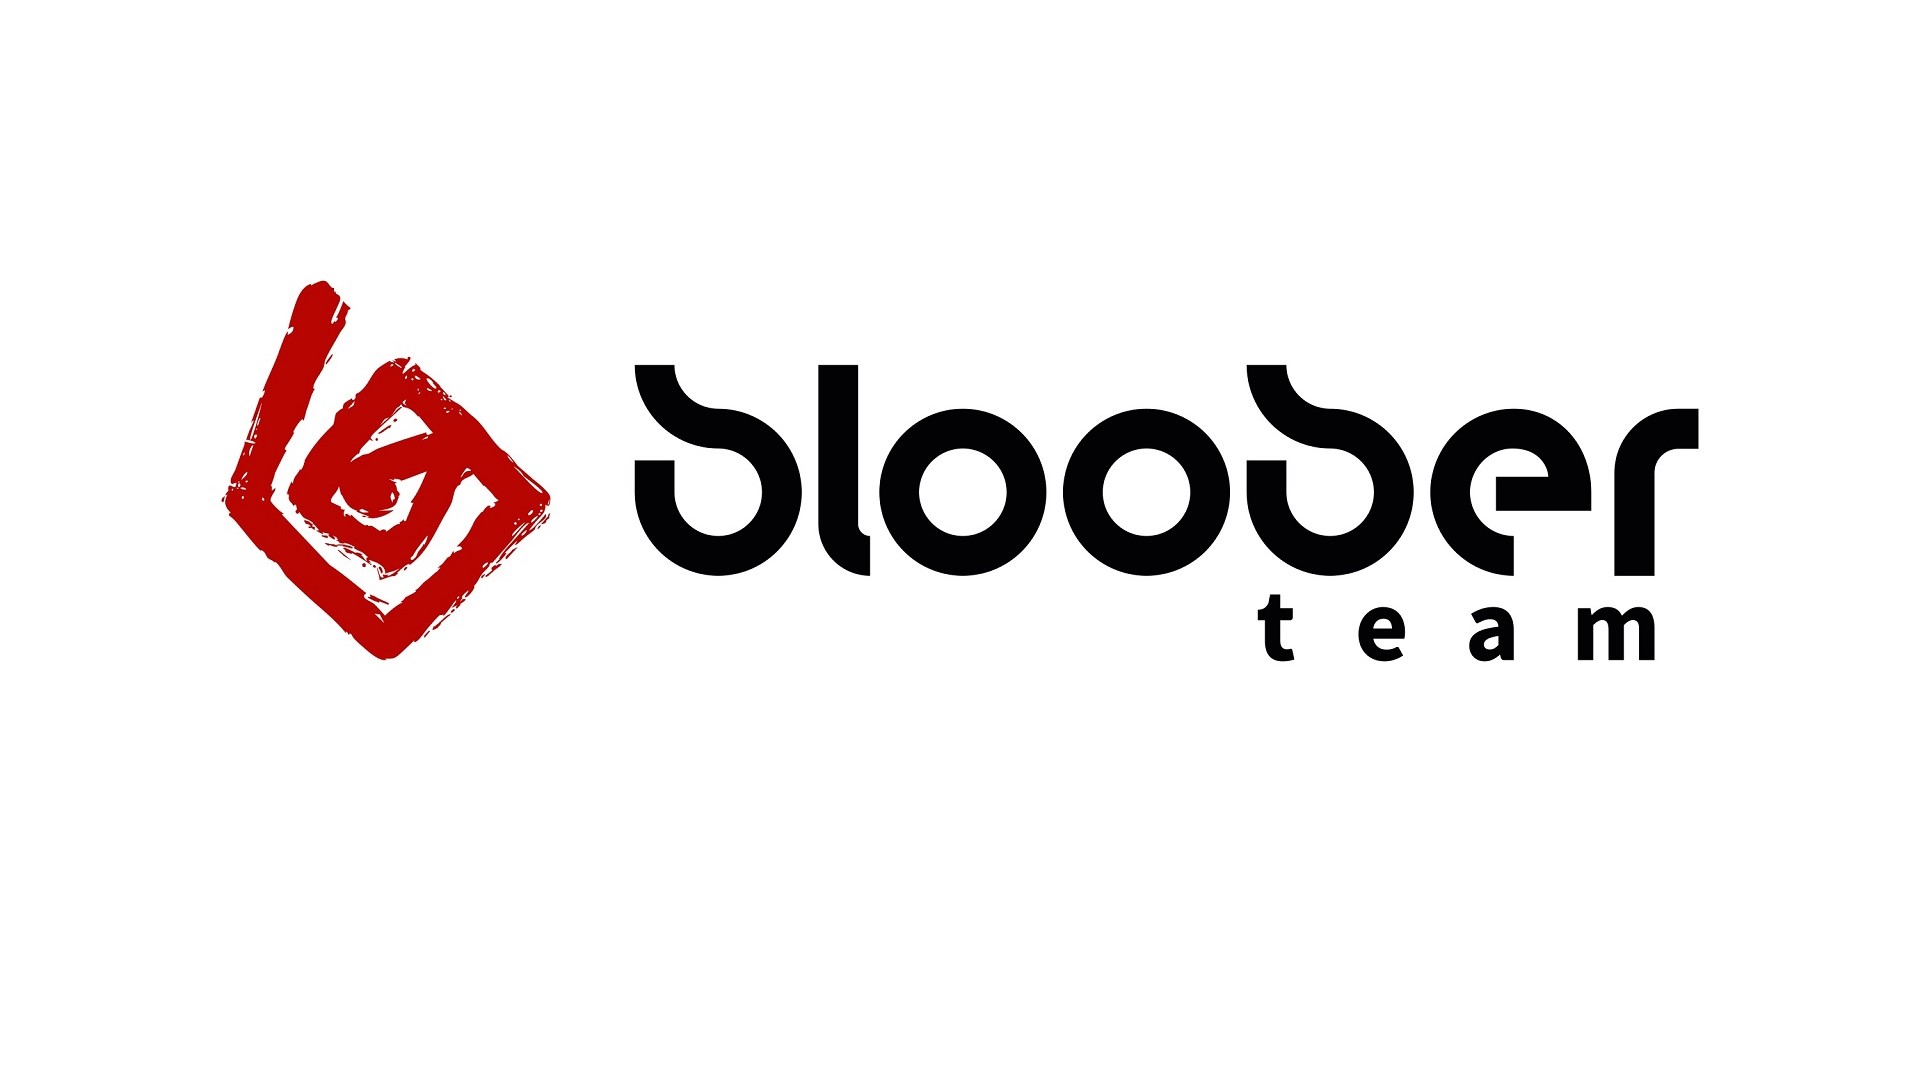 تنسنت بخشی از سهام استودیو بلوبر تیم را خریداری کرد